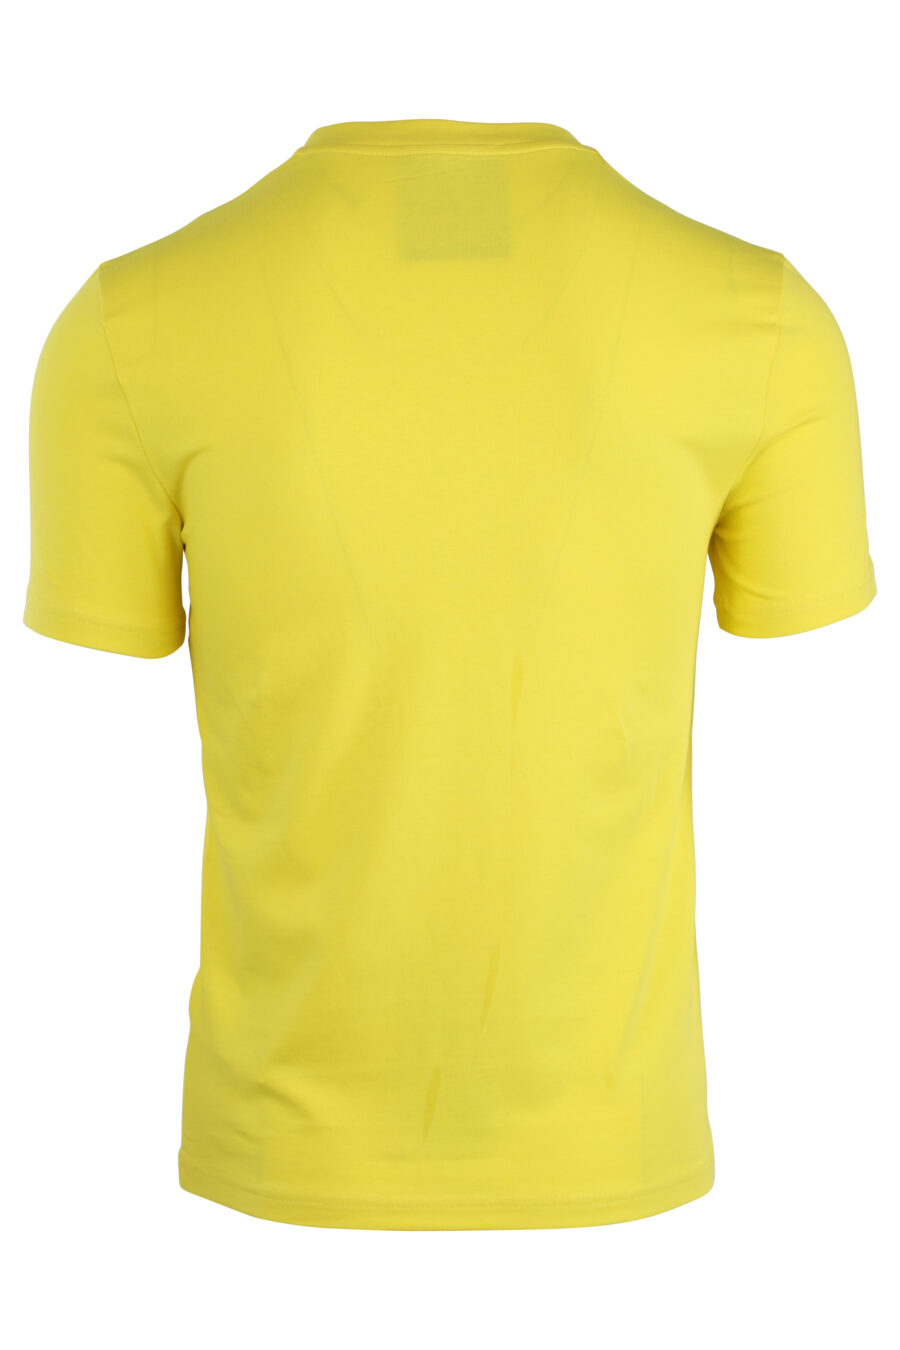 Gelbes T-Shirt mit schwarzem Maxilogo - IMG 1661